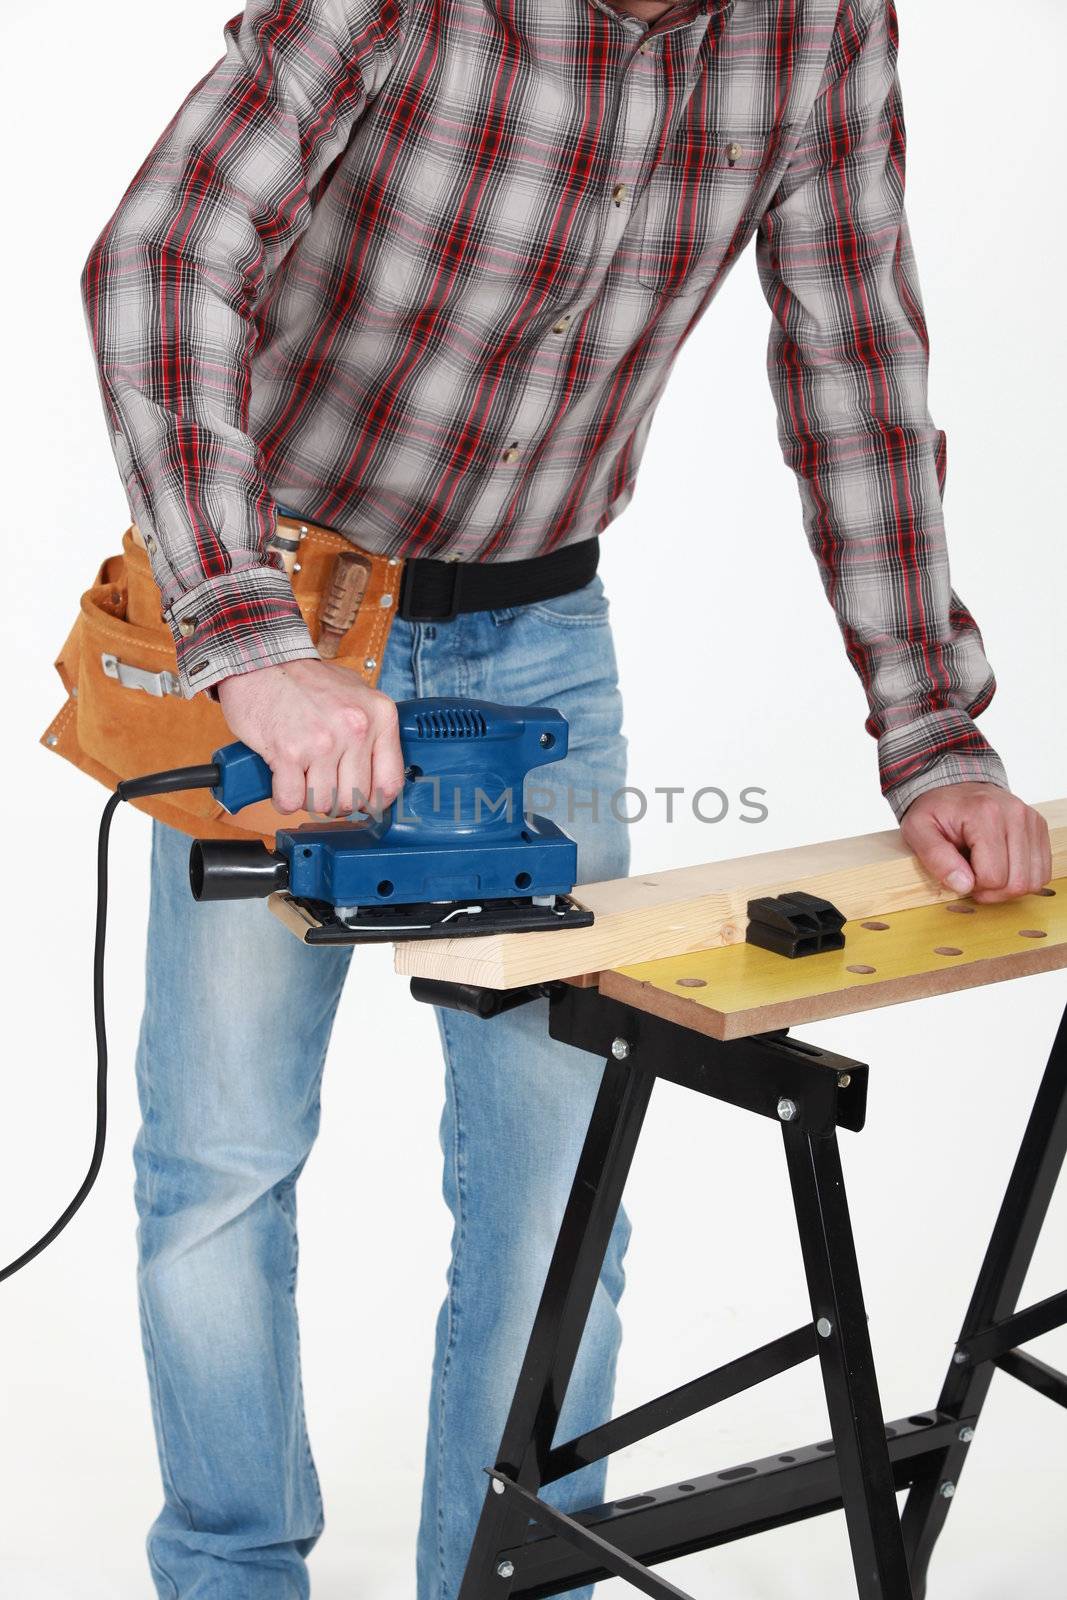 carpenter at work with sander machine by phovoir